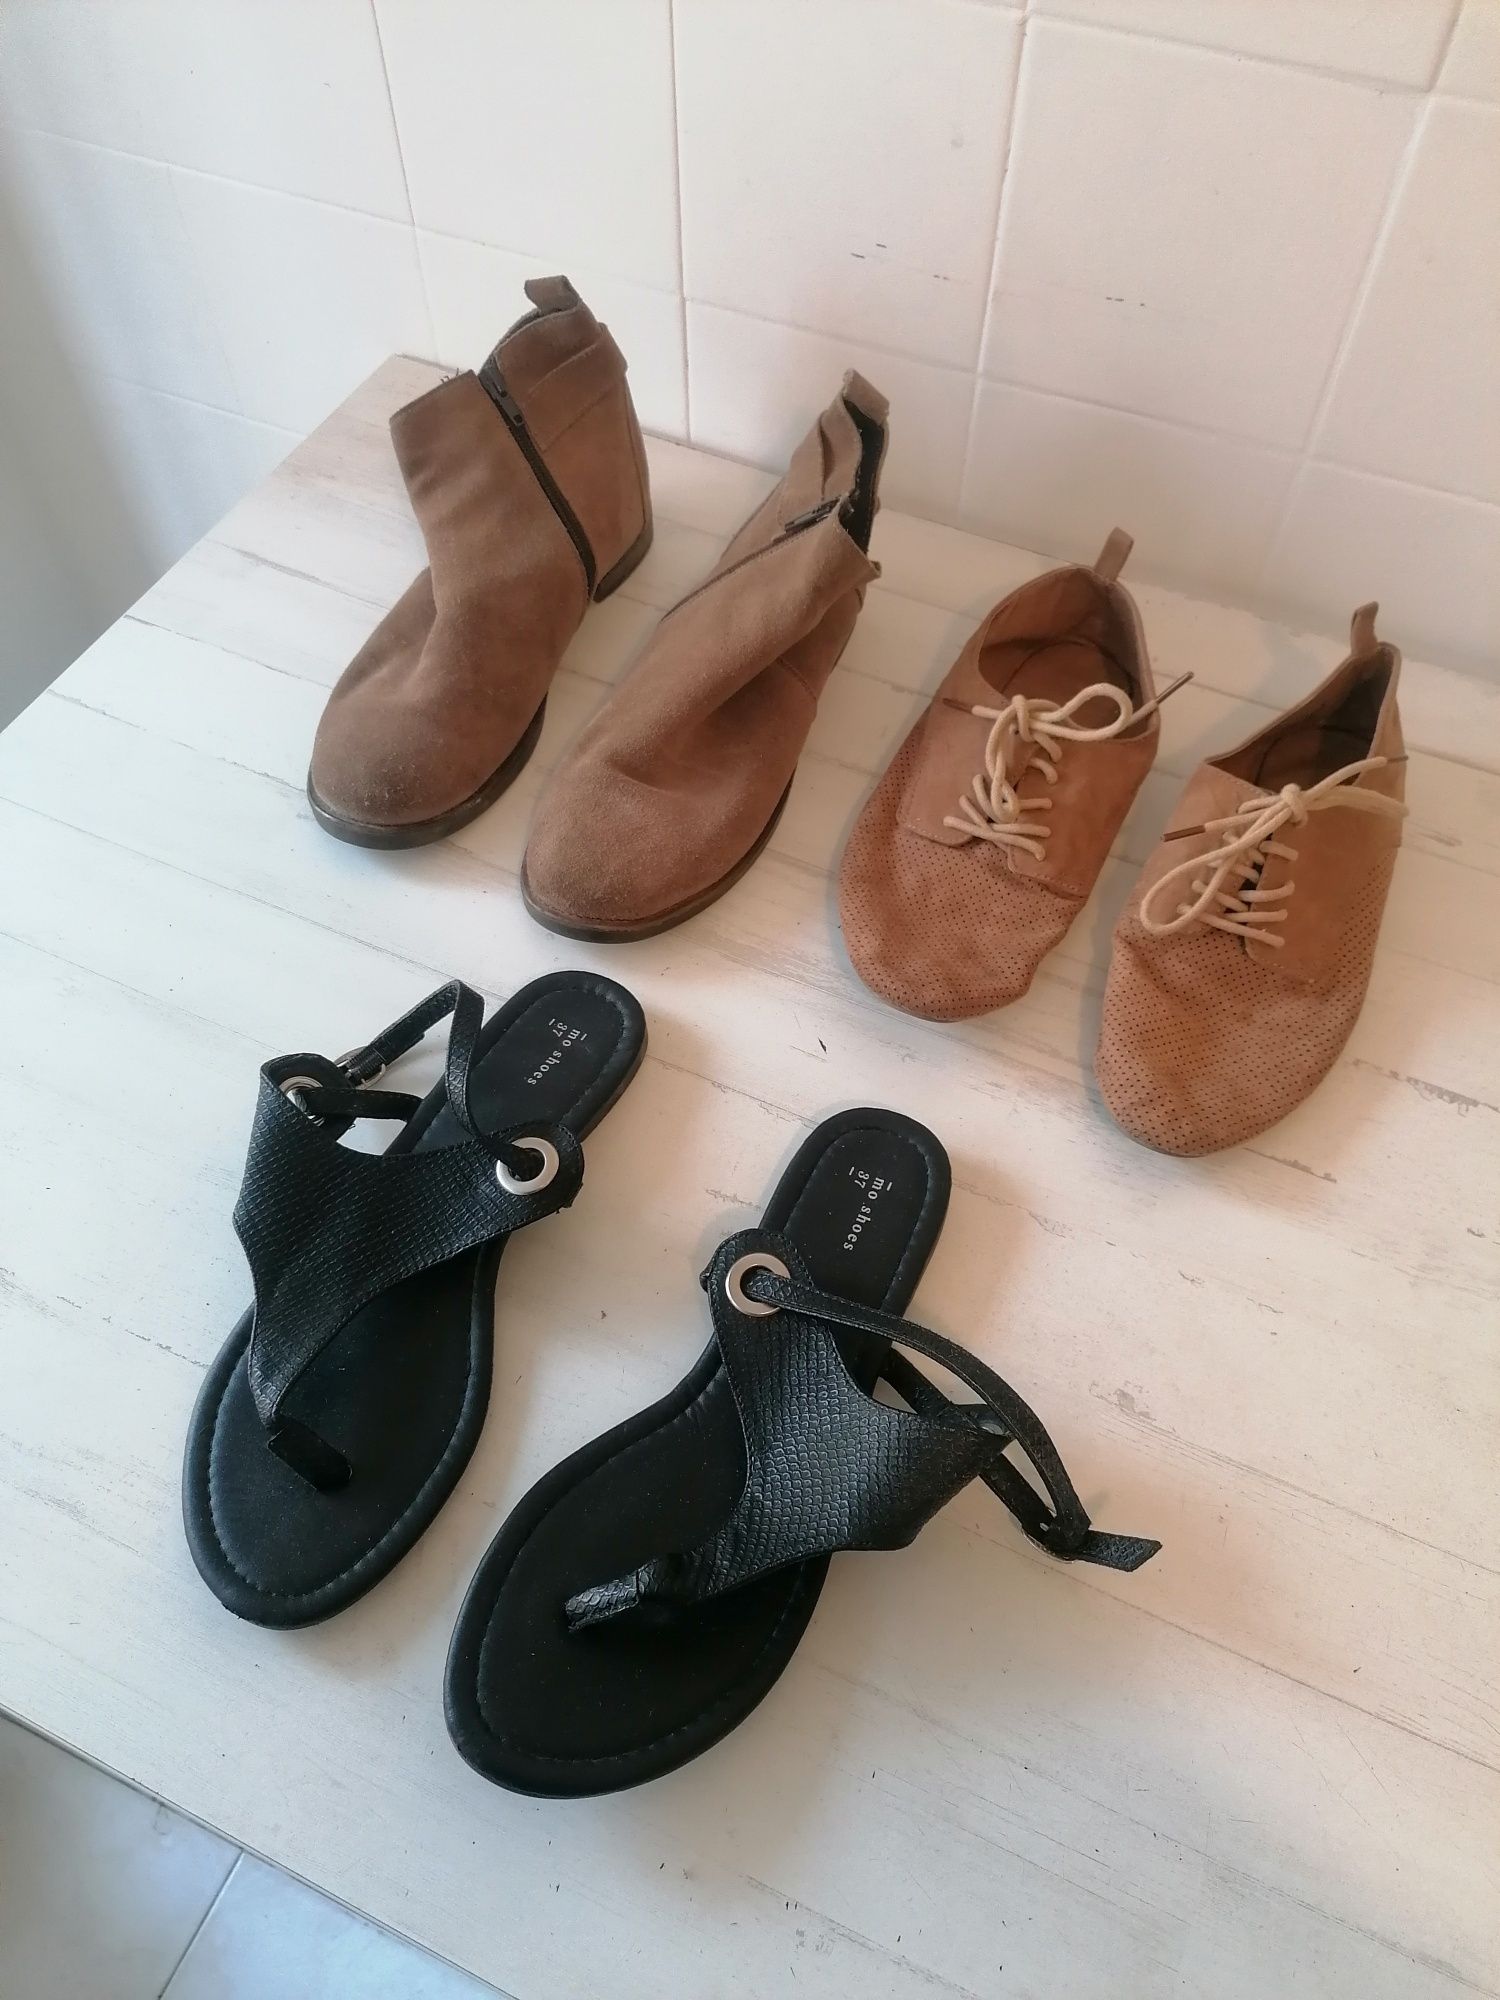 Conjuto Pack Lote Sapatos Sandálias Botas Inverno - Tamanho 37